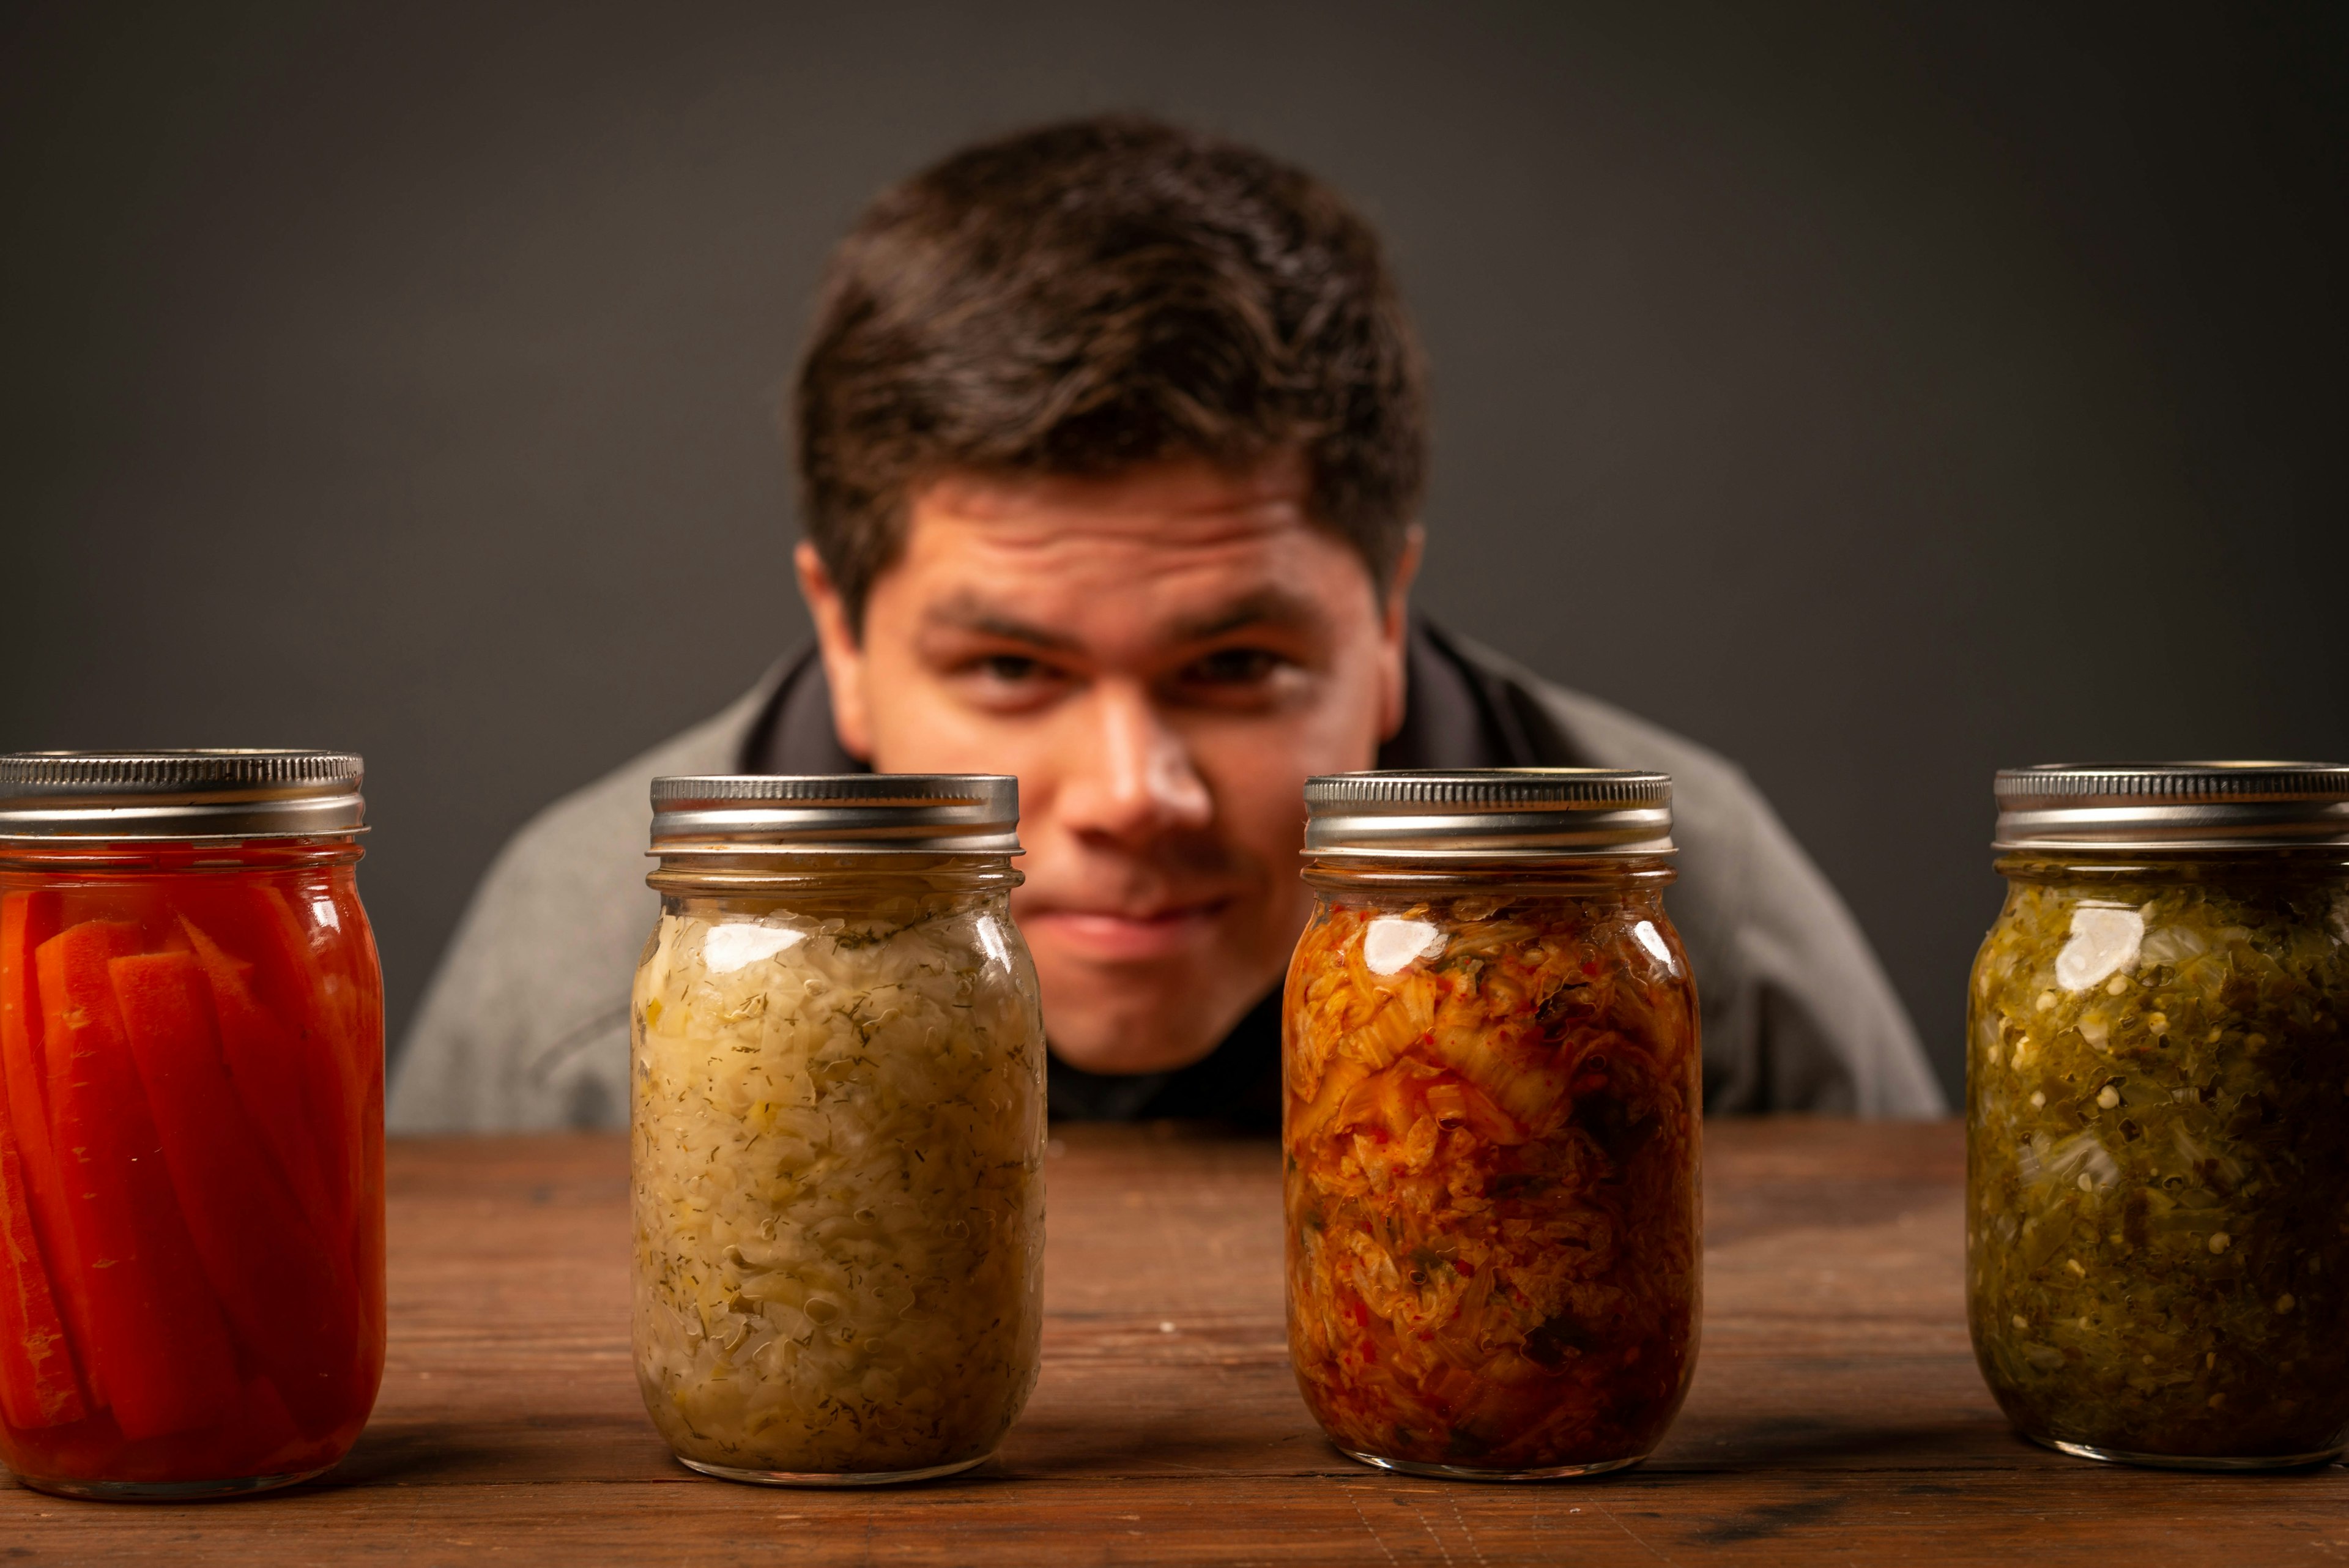 man sitting behind 4 jars of fermented foods